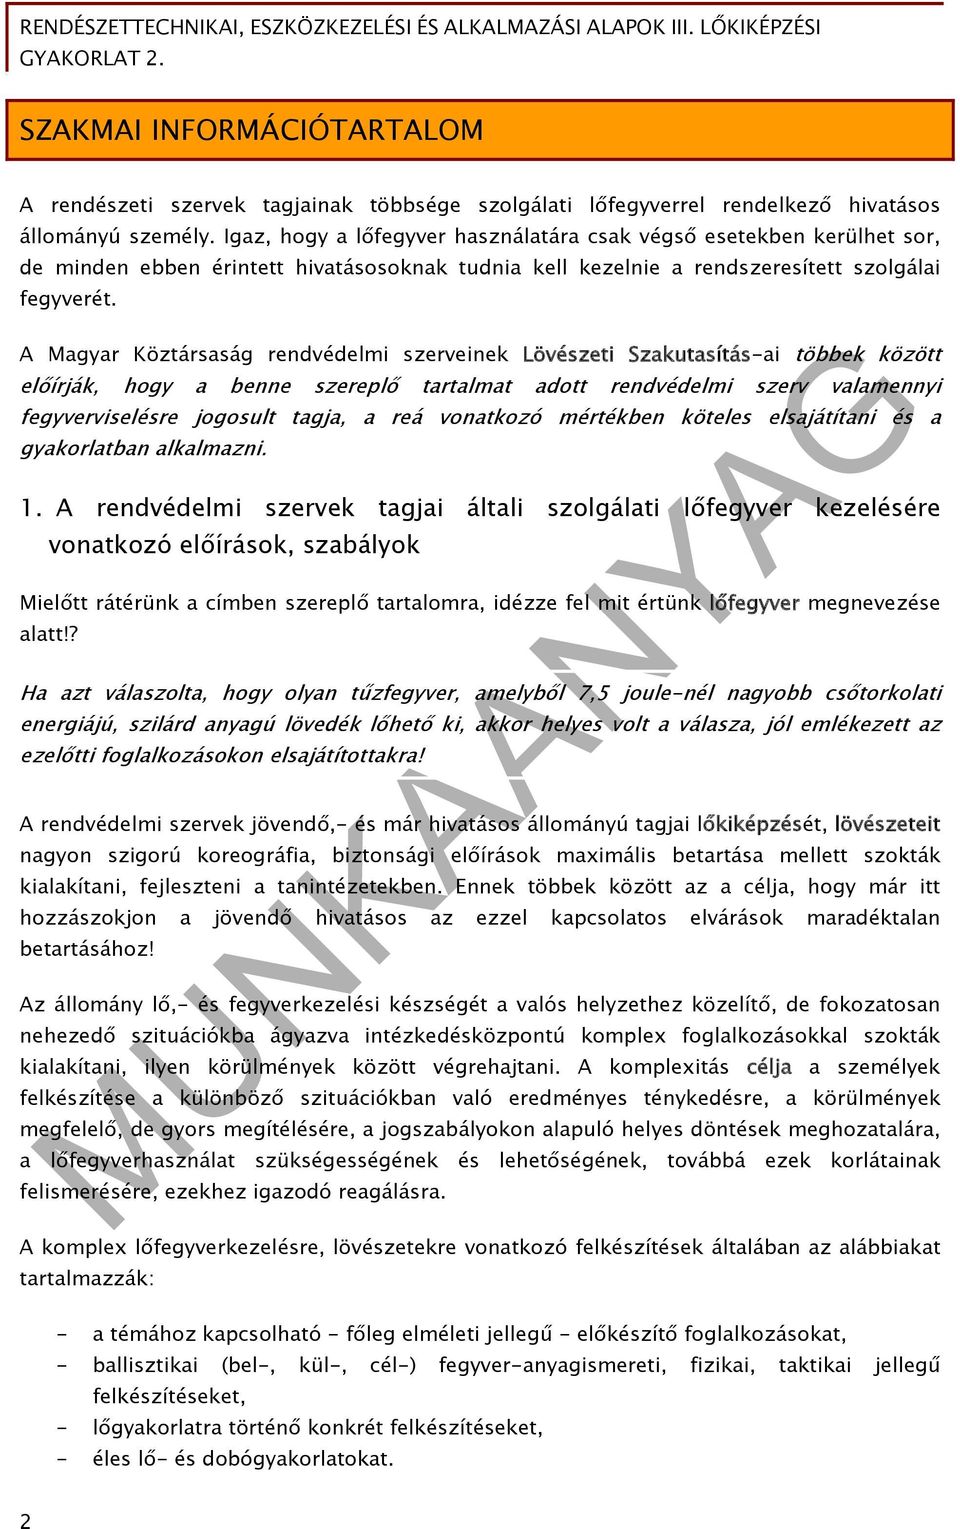 A Magyar Köztársaság rendvédelmi szerveinek Lövészeti Szakutasítás-ai többek között előírják, hogy a benne szereplő tartalmat adott rendvédelmi szerv valamennyi fegyverviselésre jogosult tagja, a reá